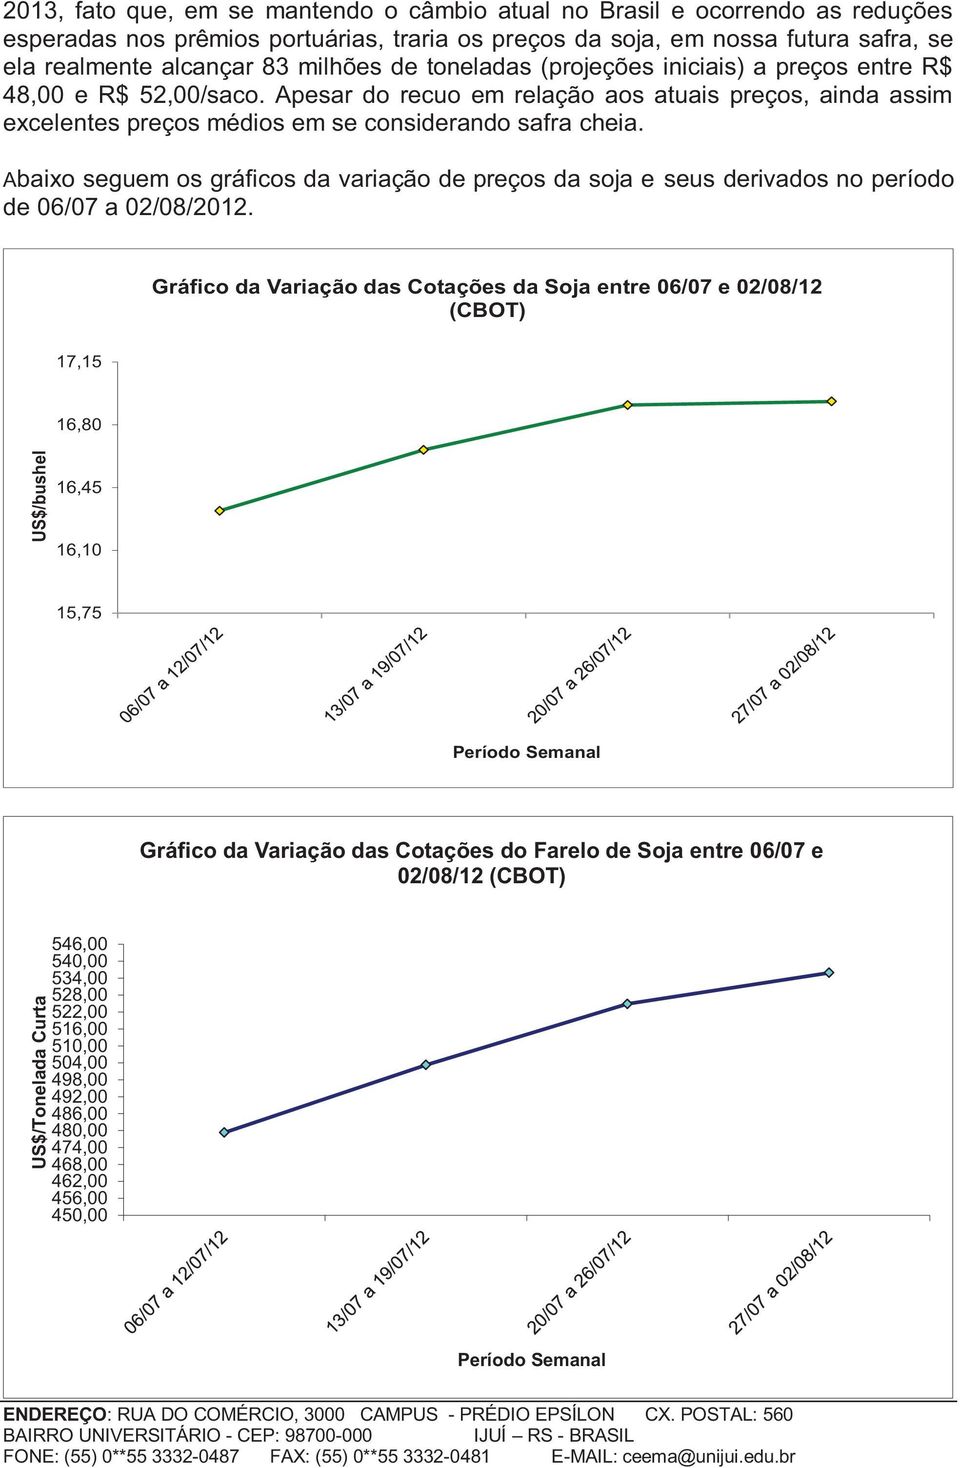 Abaixo seguem os gráficos da variação de preços da soja e seus derivados no período de 06/07 a 02/08/2012.